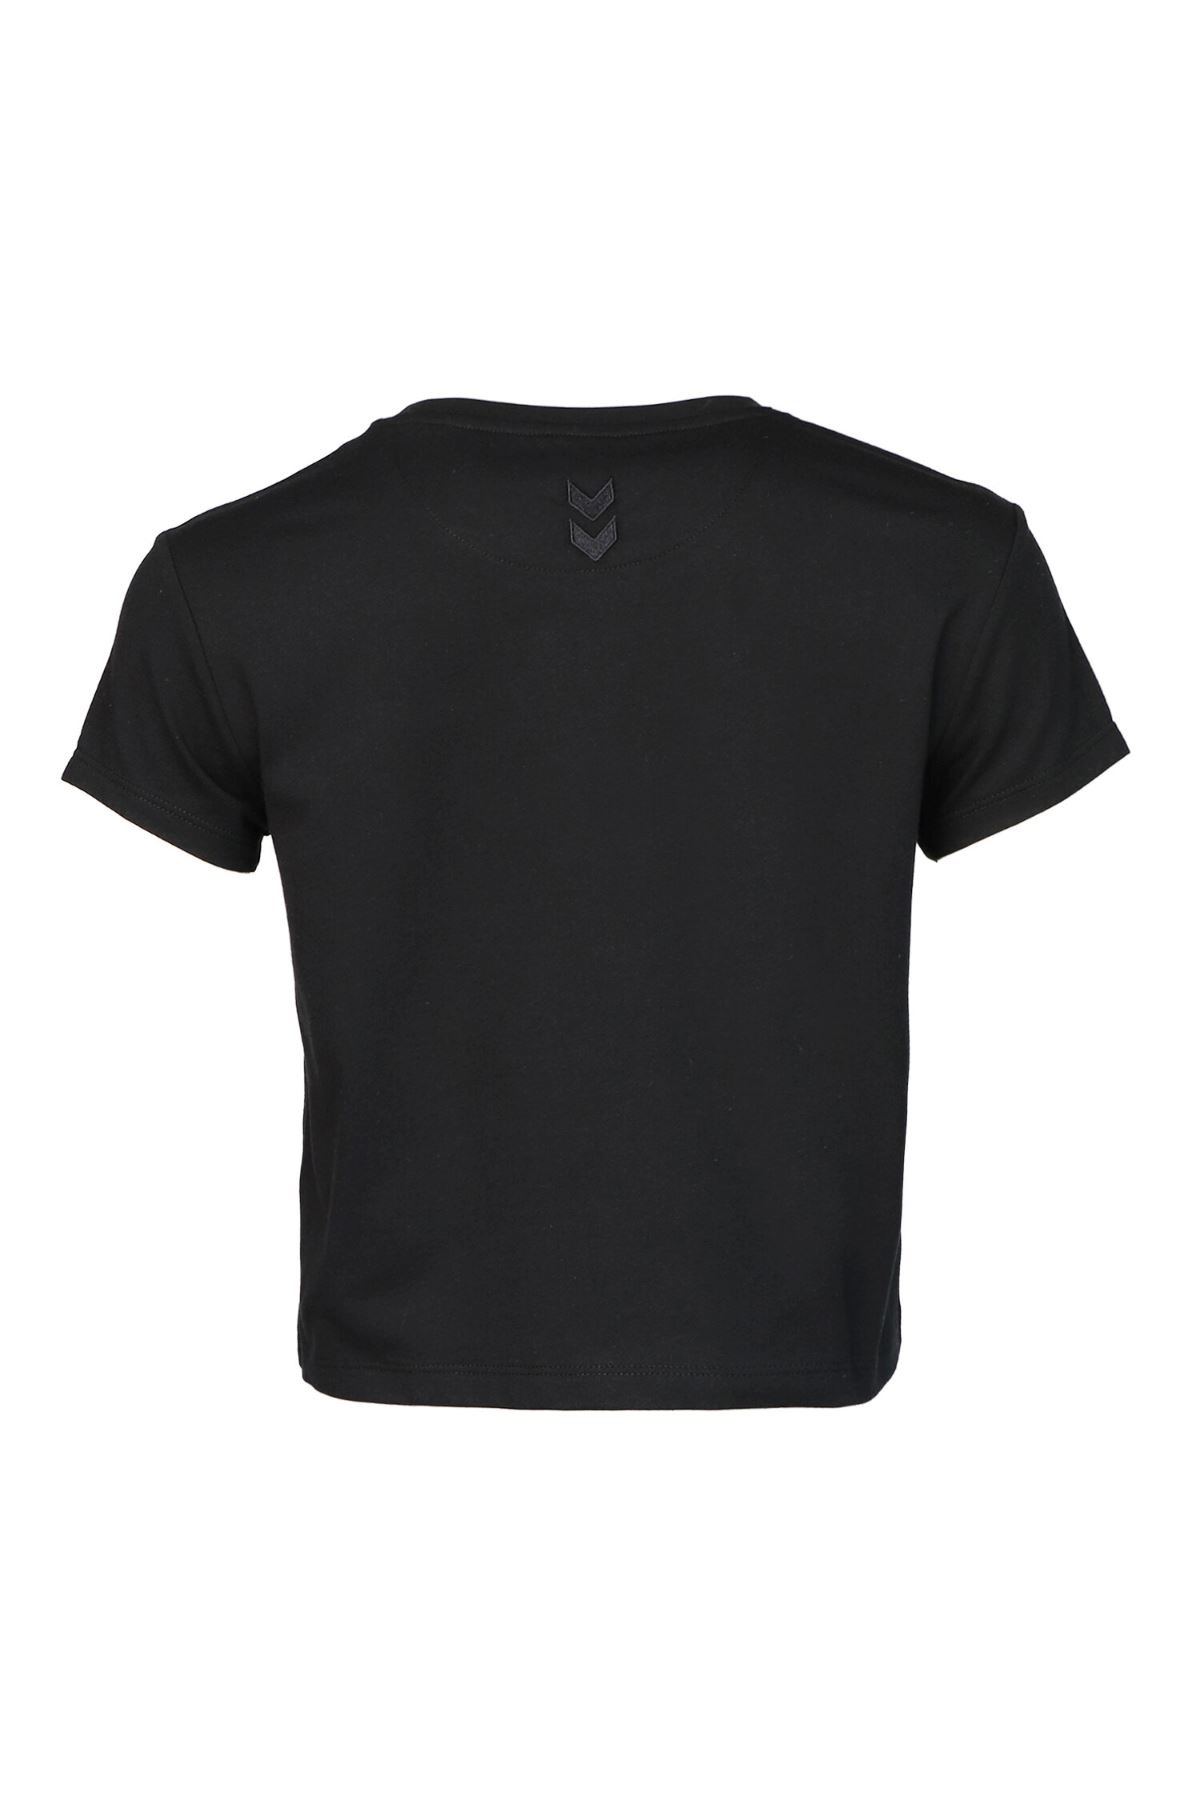 Hummel Hmlt-Mt Emmı Short T-Shırt Kadın Siyah Tişört - 911681-2001